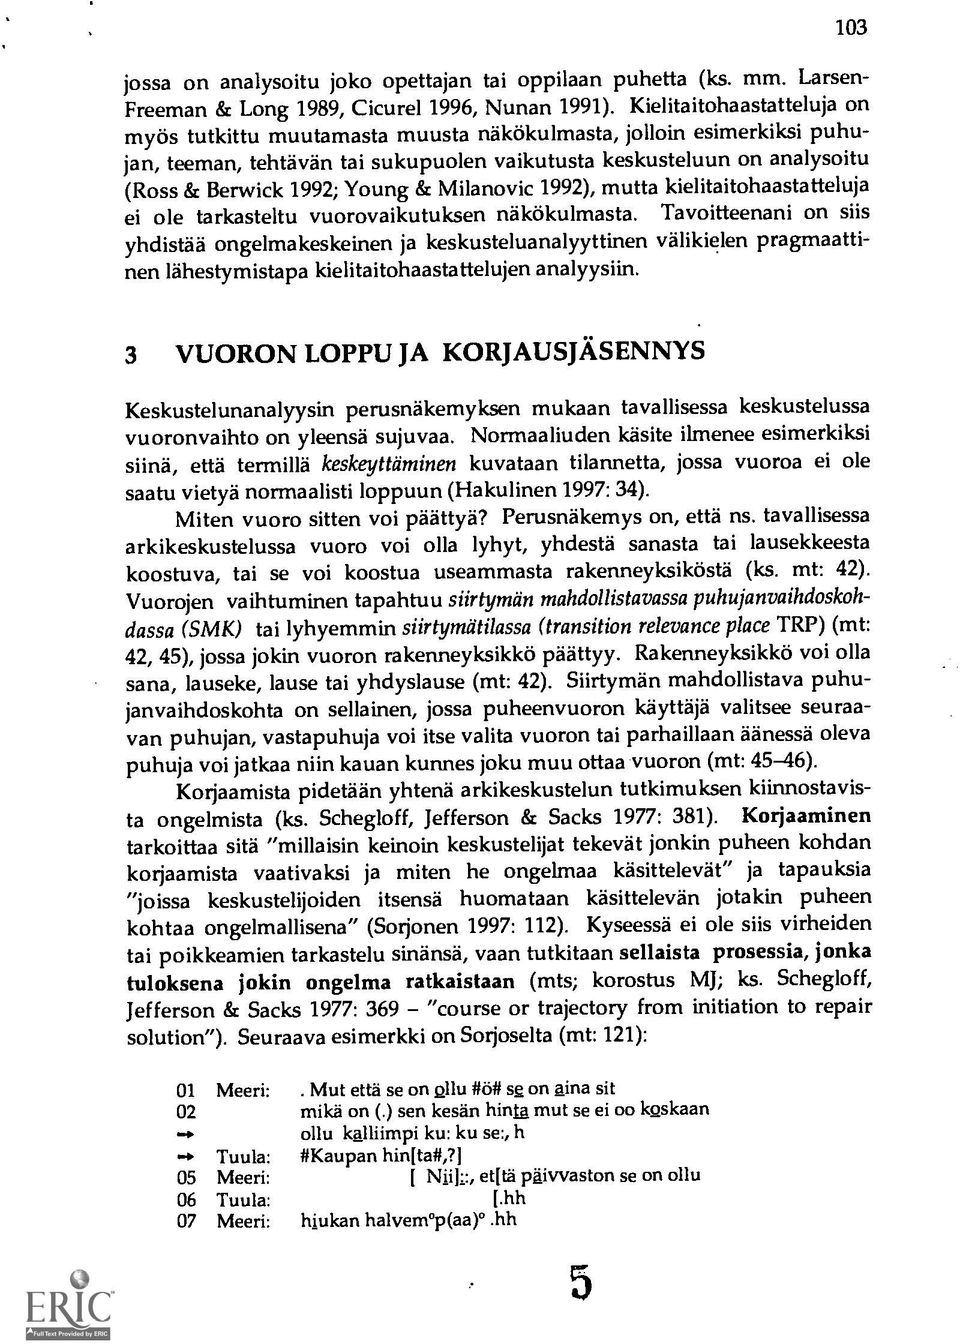 & Milanovic 1992), mutta kielitaitohaastatteluja ei ole tarkasteltu vuorovaikutuksen näkökulmasta.